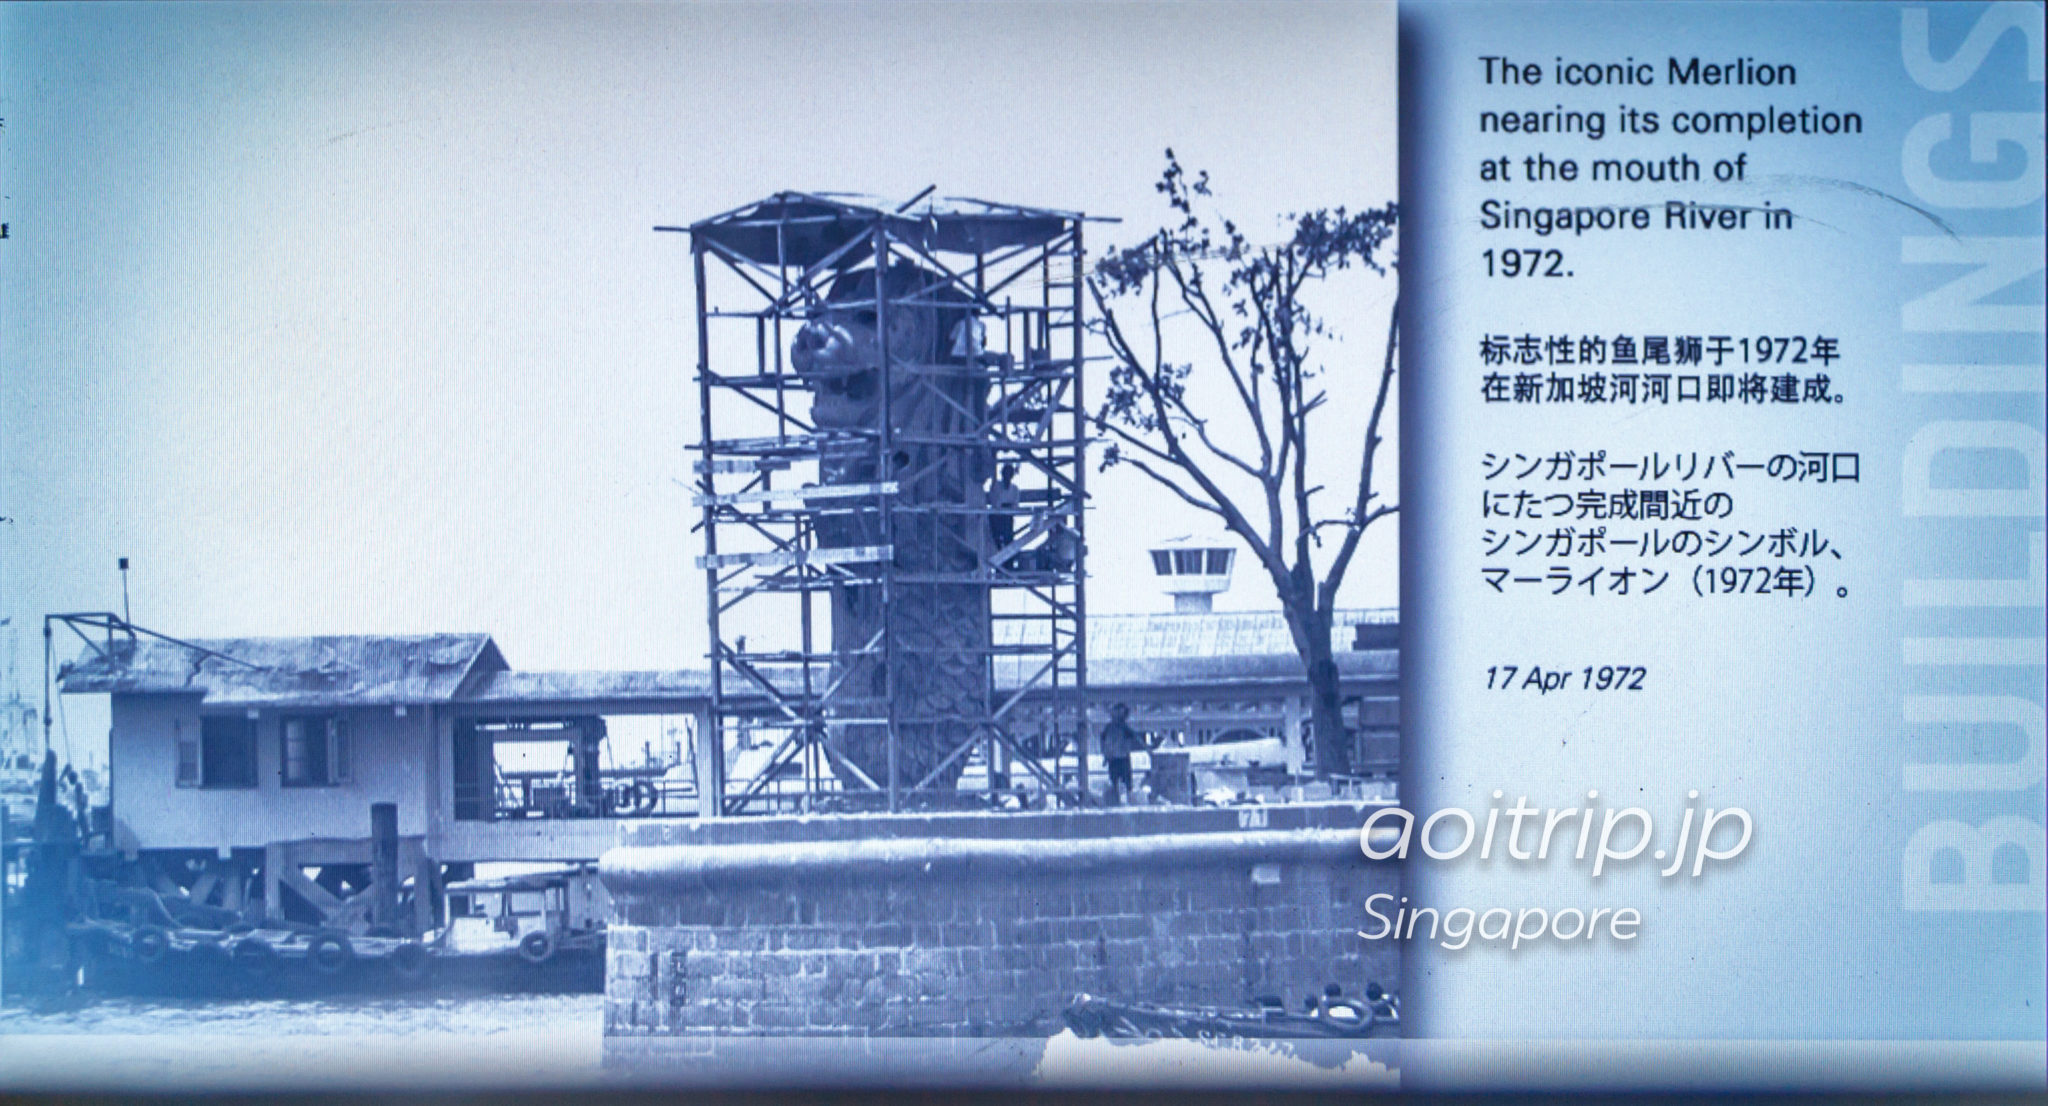 1972年シンガポールリバー河口の設置当時のマーライオン像